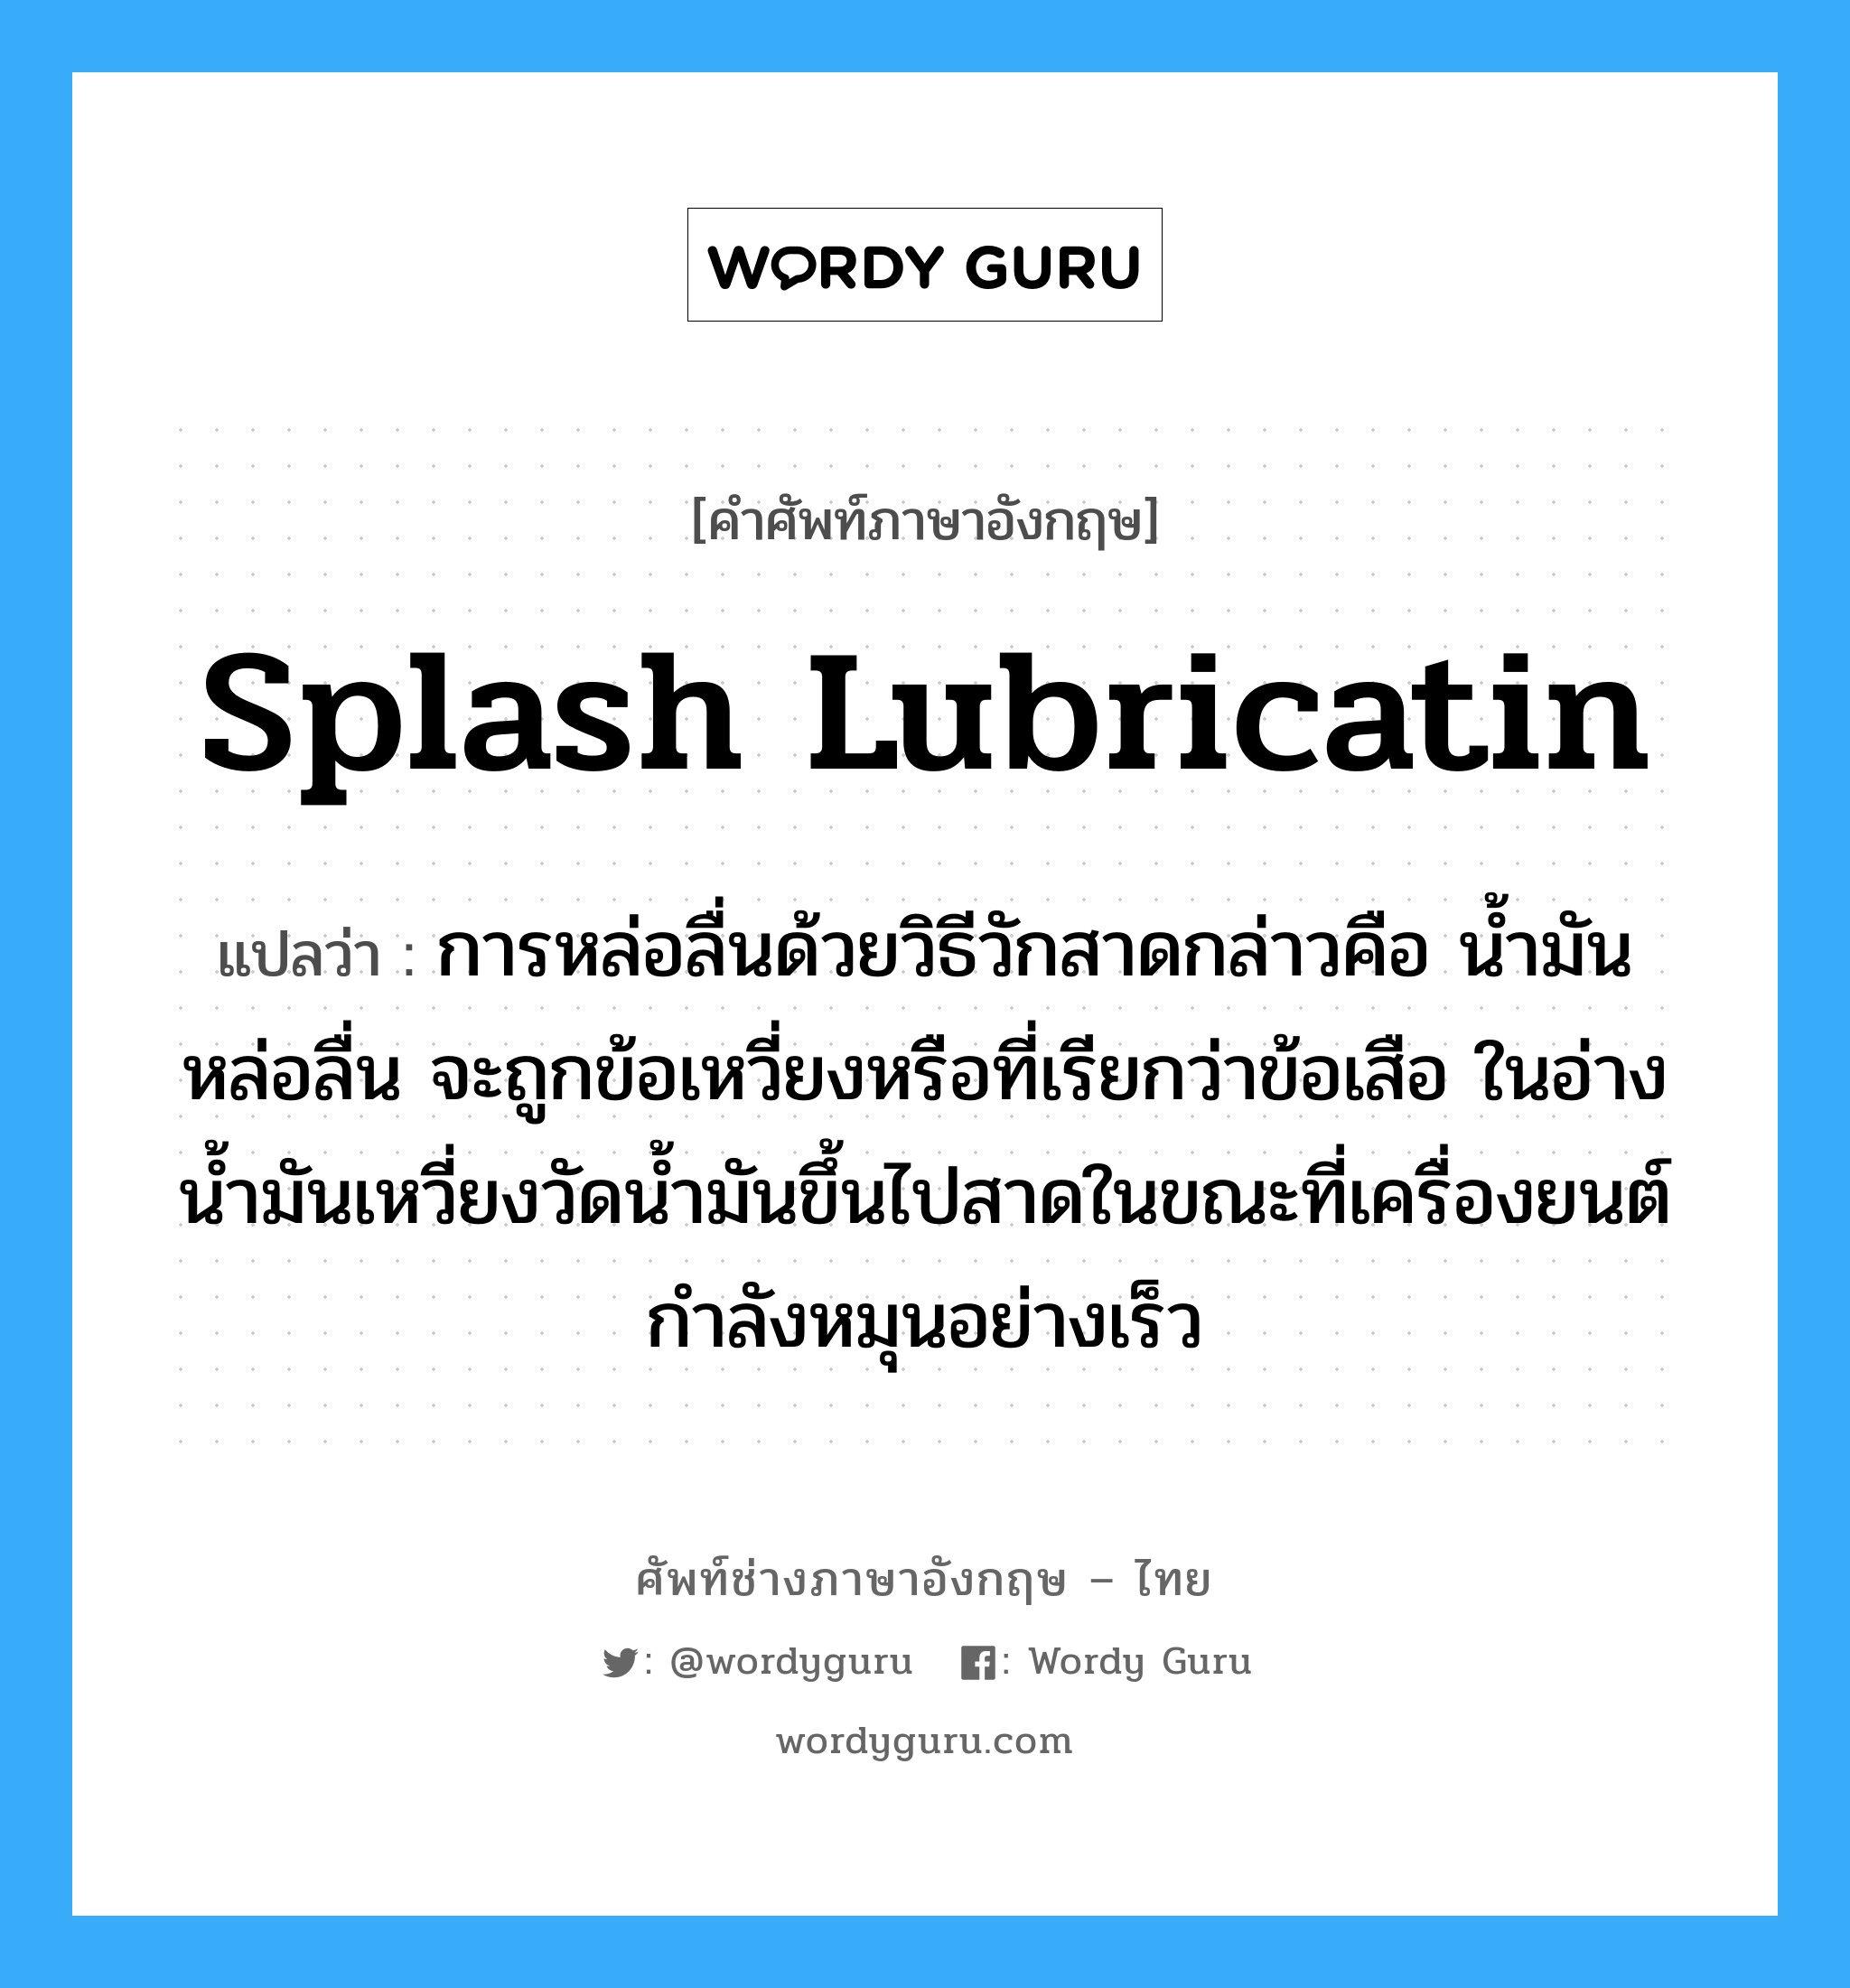 splash lubricatin แปลว่า?, คำศัพท์ช่างภาษาอังกฤษ - ไทย splash lubricatin คำศัพท์ภาษาอังกฤษ splash lubricatin แปลว่า การหล่อลื่นด้วยวิธีวักสาดกล่าวคือ น้ำมันหล่อลื่น จะถูกข้อเหวี่ยงหรือที่เรียกว่าข้อเสือ ในอ่างน้ำมันเหวี่ยงวัดน้ำมันขึ้นไปสาดในขณะที่เครื่องยนต์กำลังหมุนอย่างเร็ว